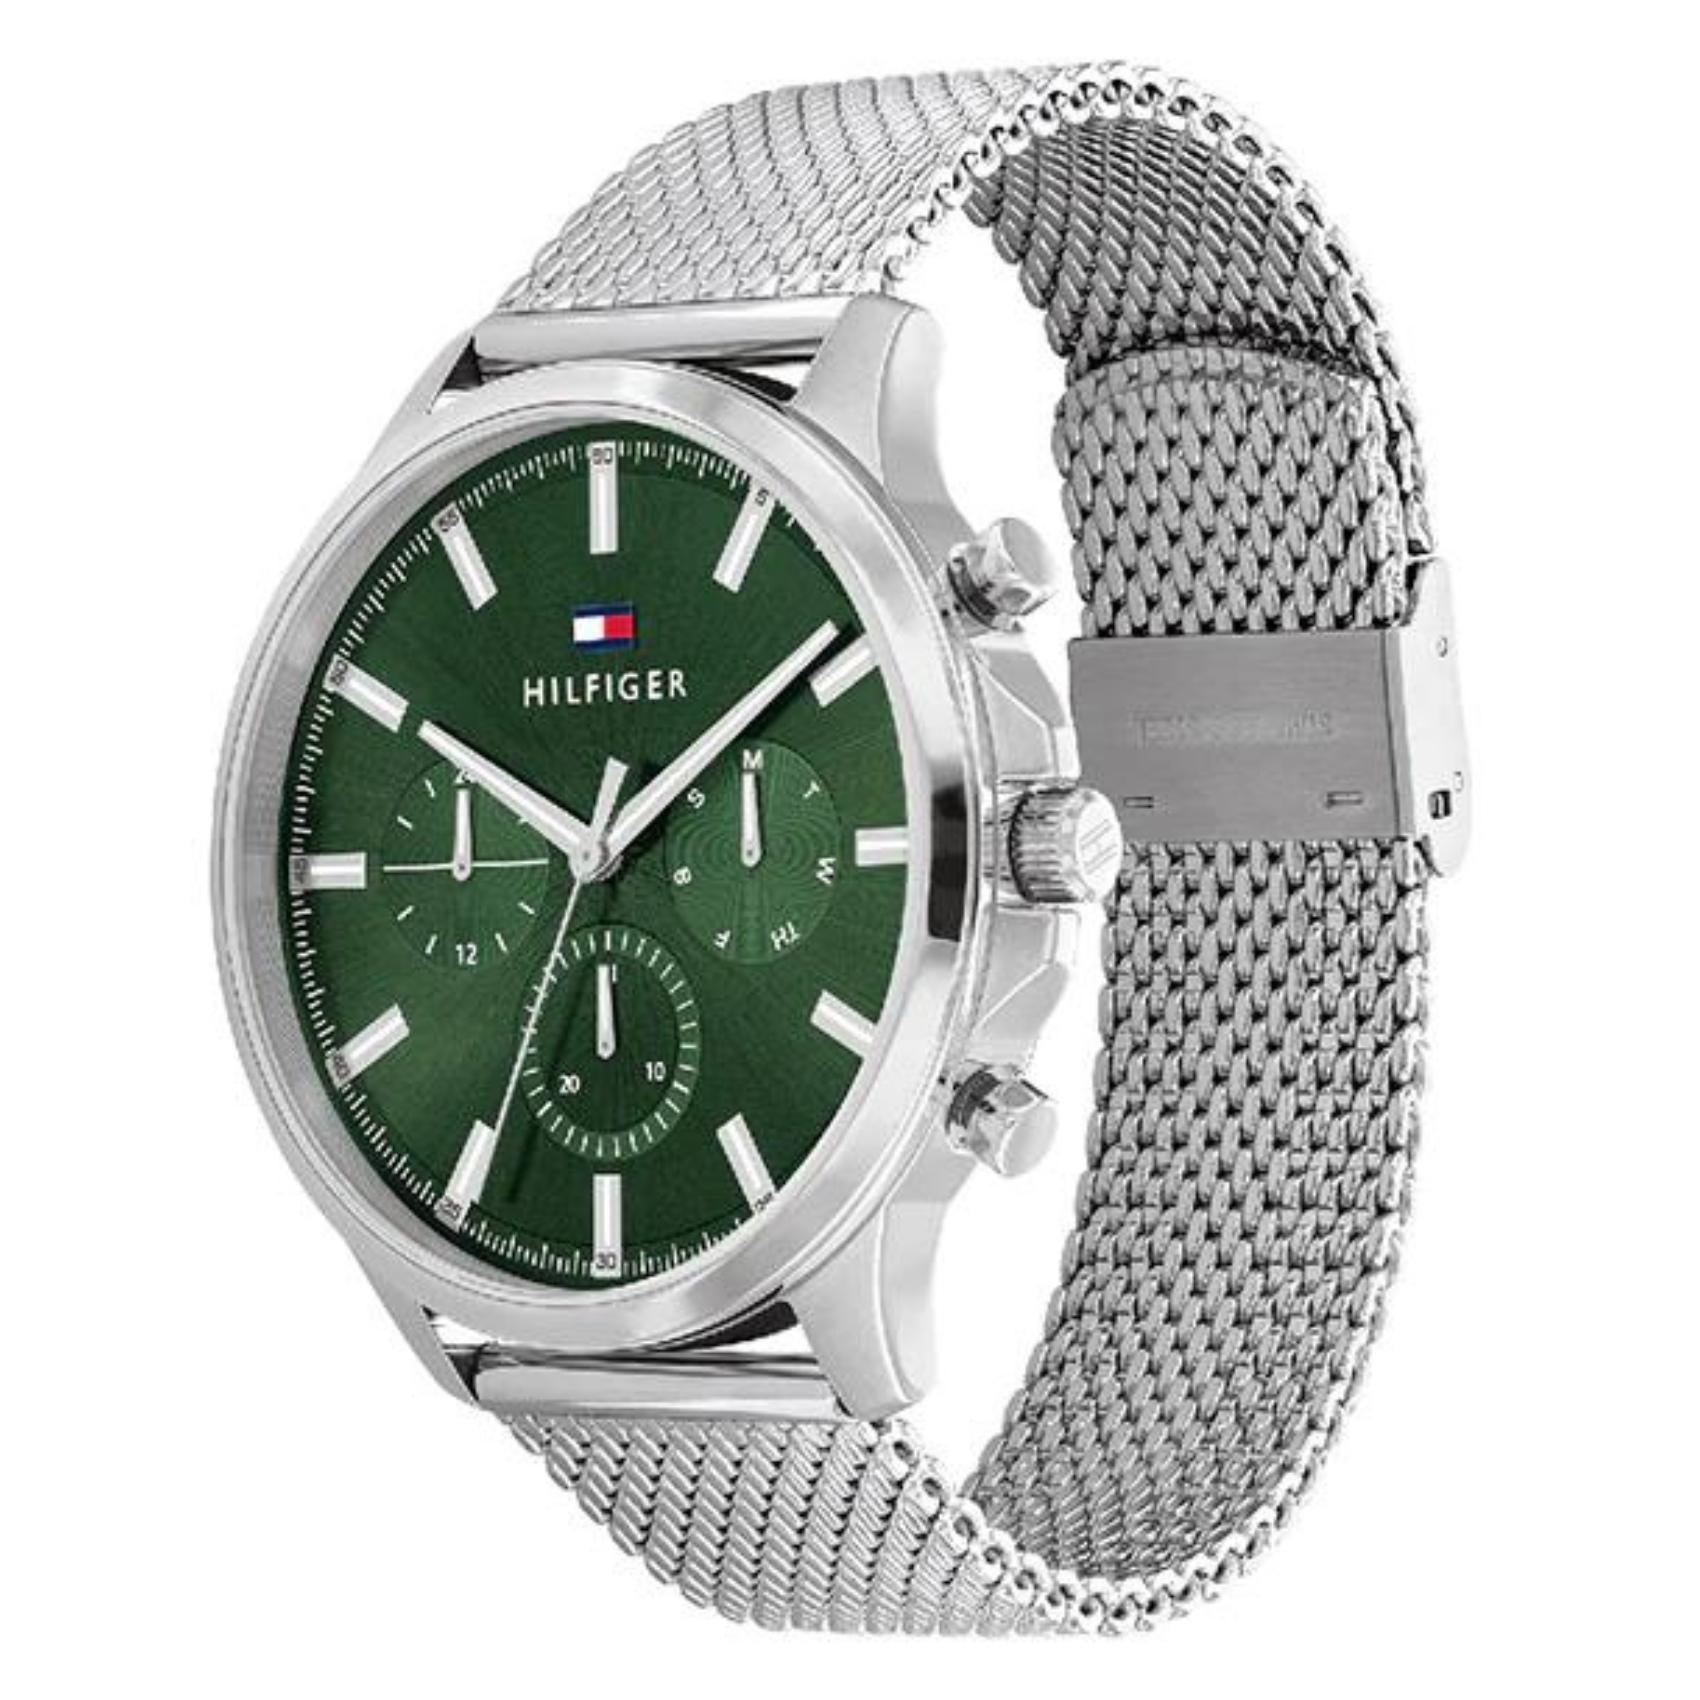 Αντρικό ρολόι Tommy Hilfiger James 1710499 χρονογράφος με ασημί ατσάλινο μπρασελέ και πράσινο καντράν διαμέτρου 44mm.